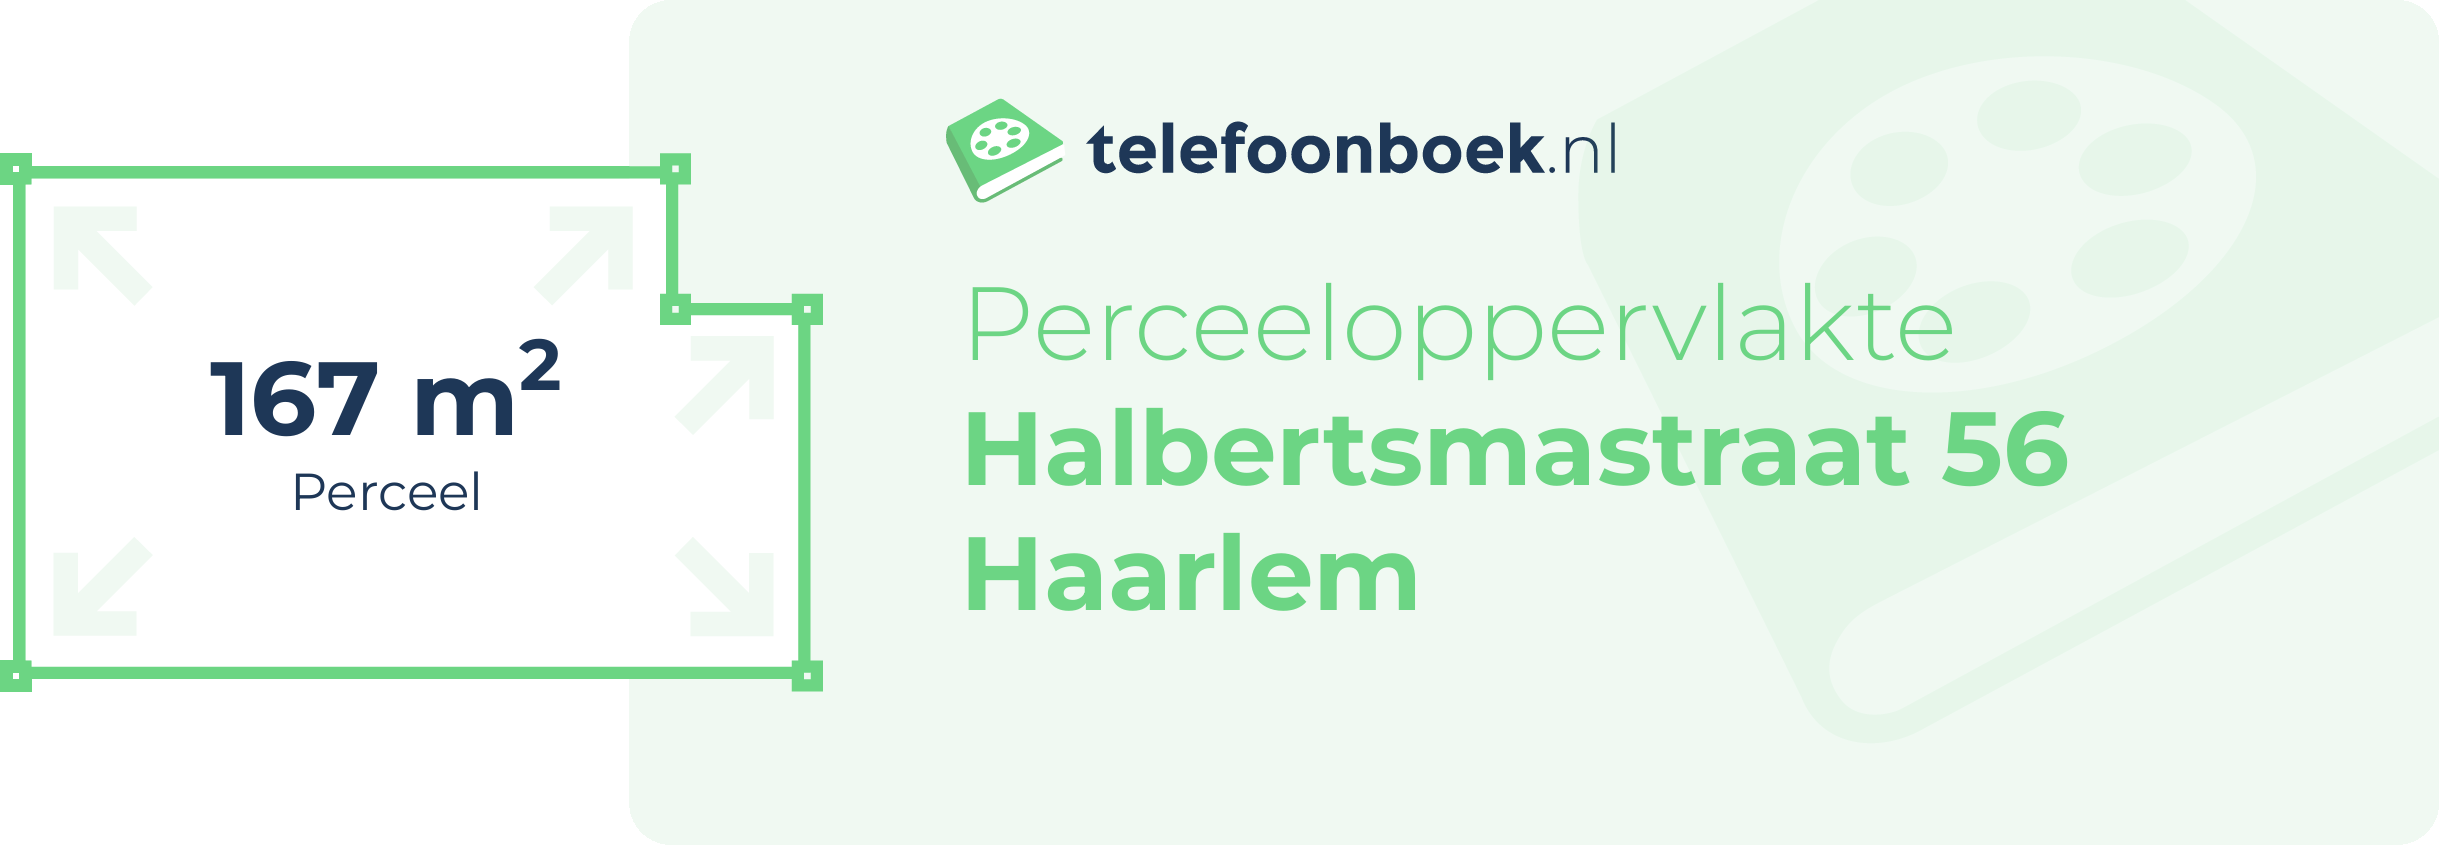 Perceeloppervlakte Halbertsmastraat 56 Haarlem